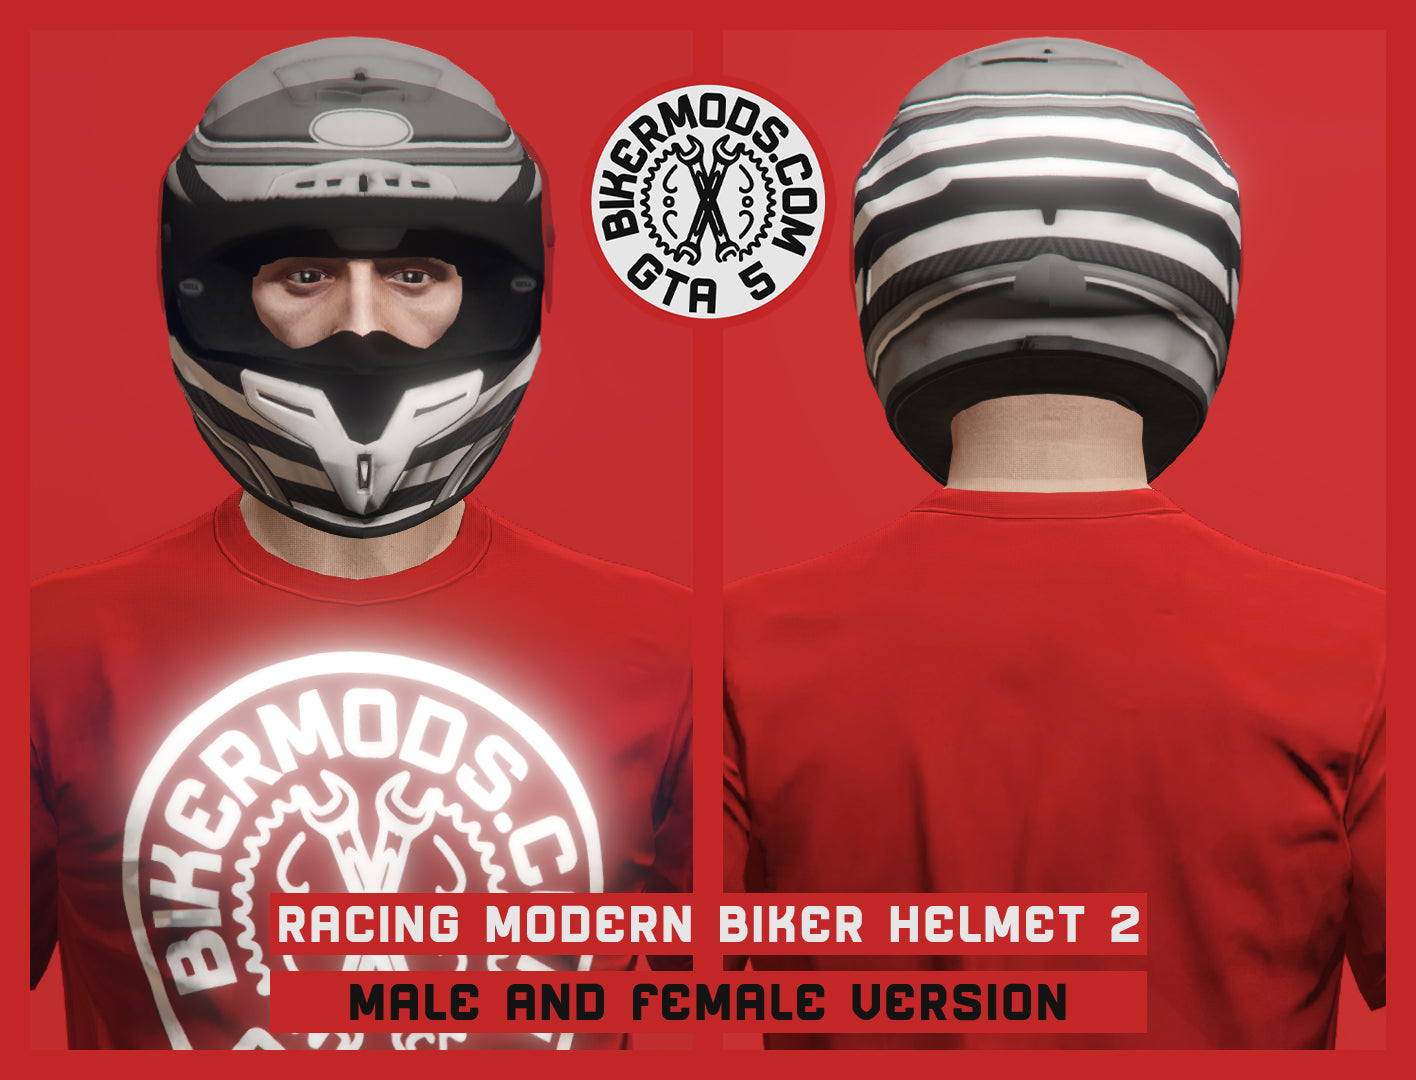 Racing Modern Biker Helmet 2 (Open & Closed)